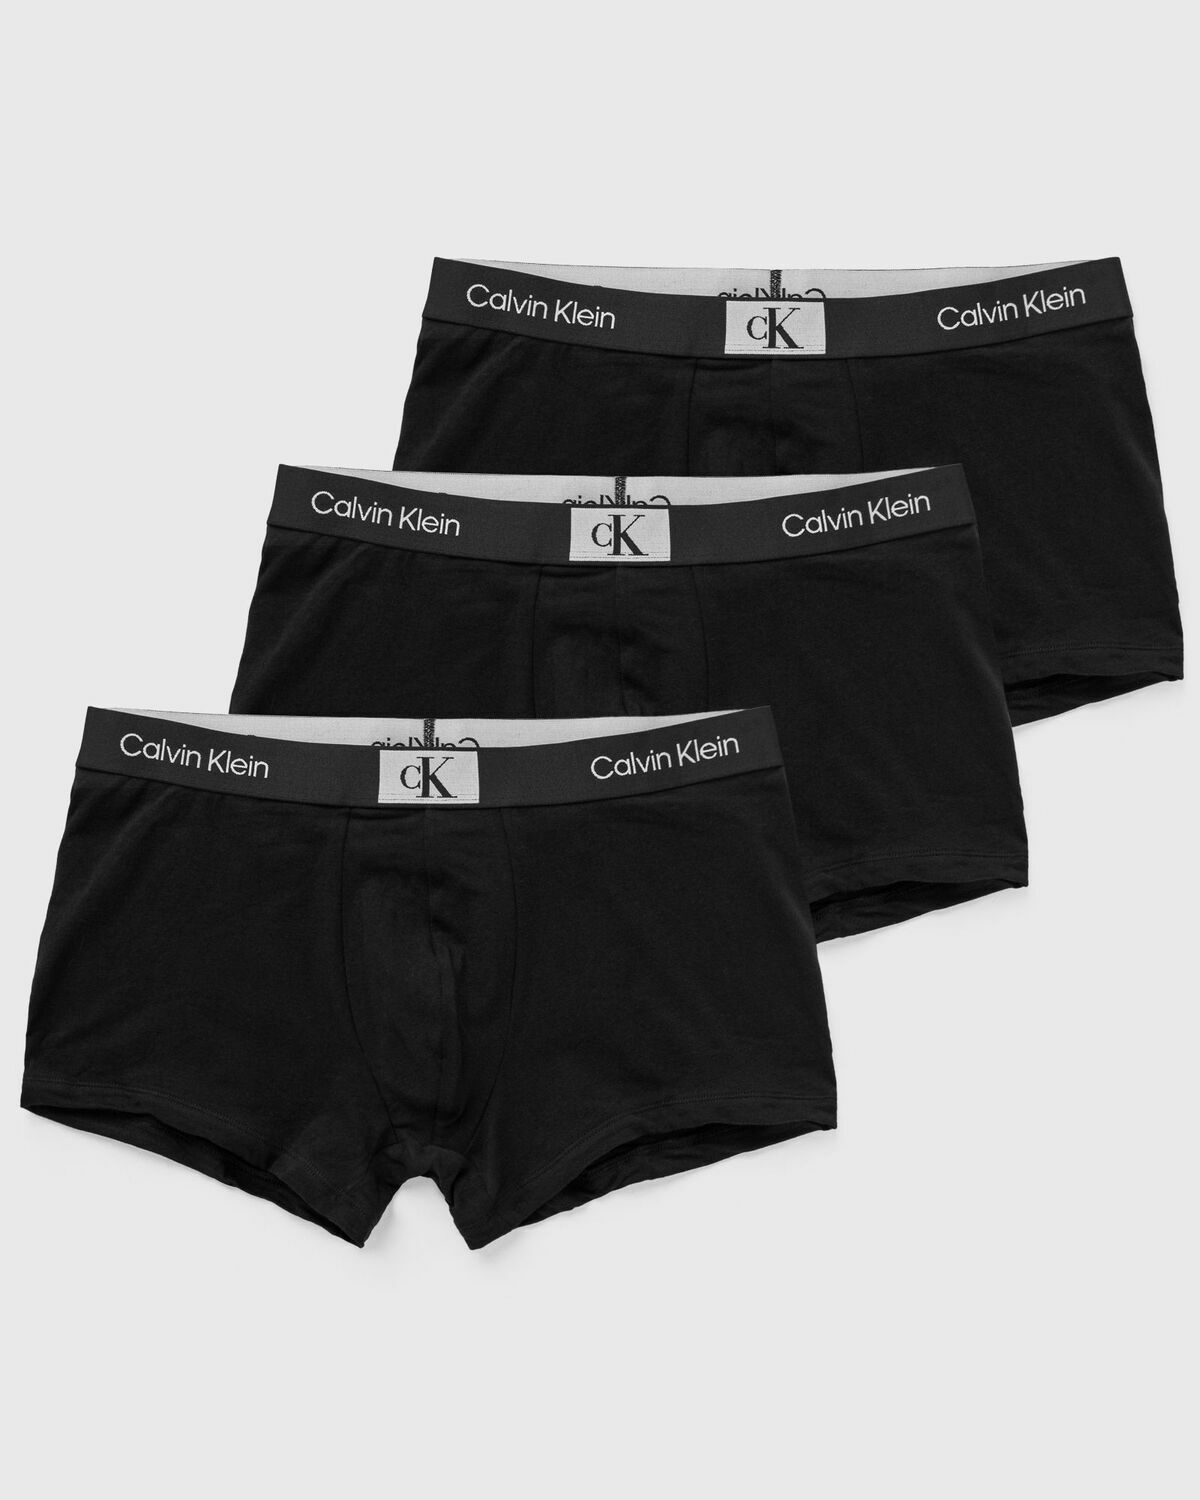 Calvin Klein Underwear Ck96 Trunk 3 Pack Black - Mens - Boxers & Briefs Calvin  Klein Underwear